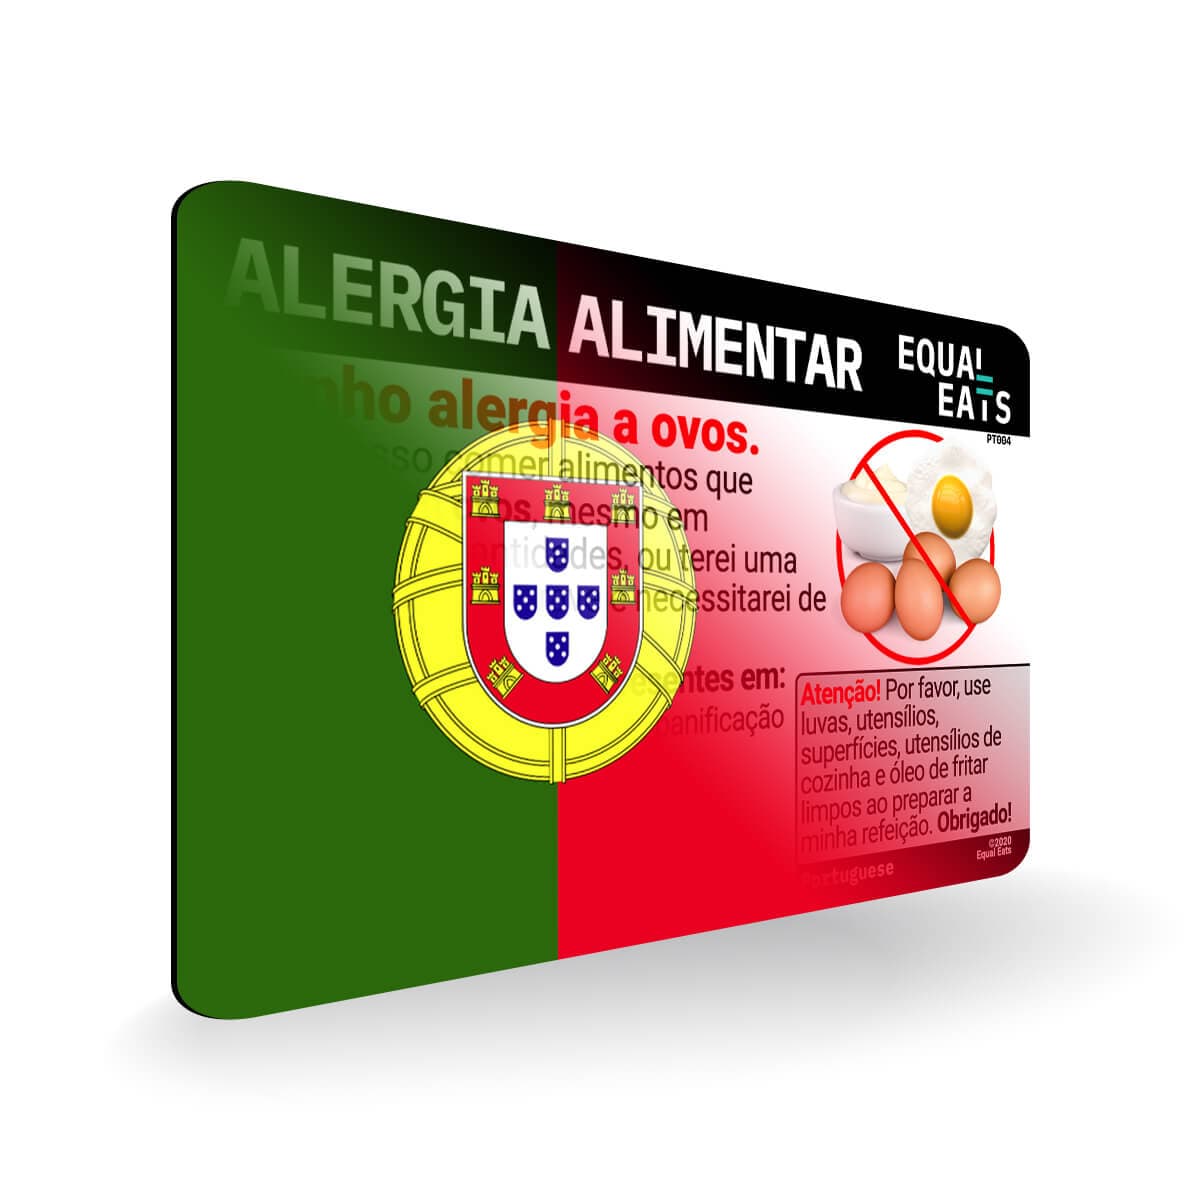 Egg Allergy in Portuguese. Egg Allergy Card for Portugal